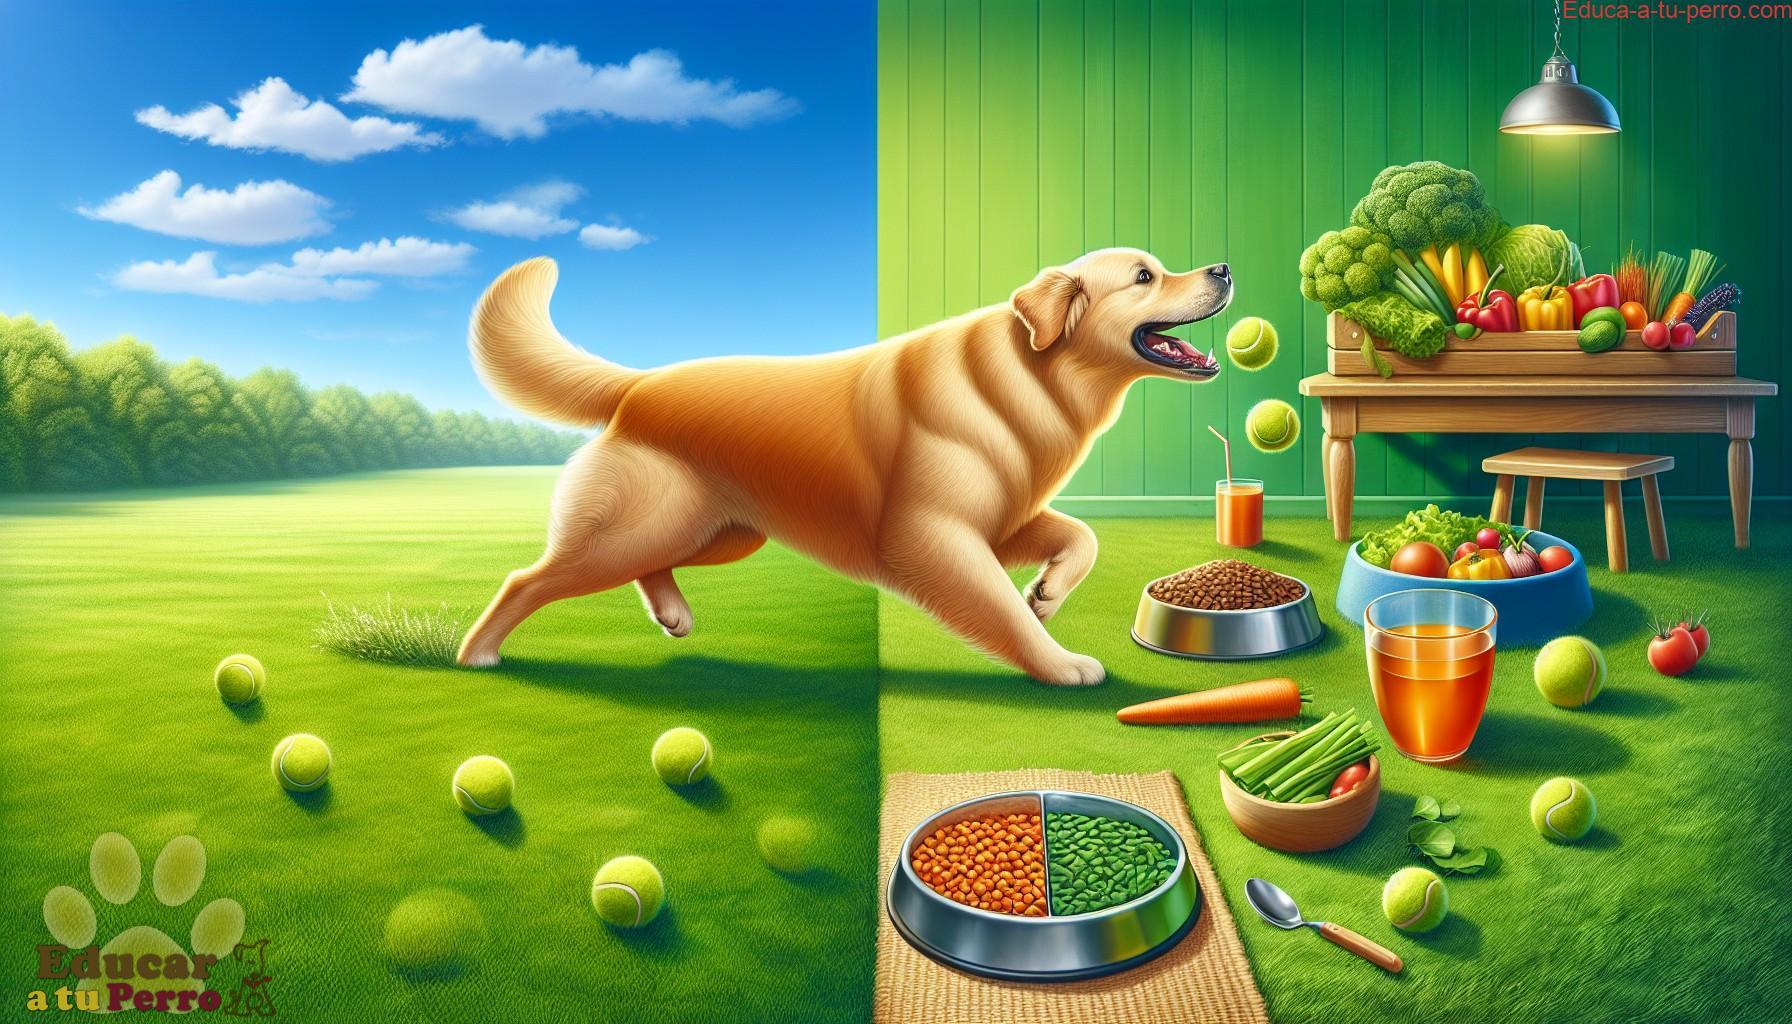 la dieta y el ejercicio del perro - La dieta y el ejercicio del Perro